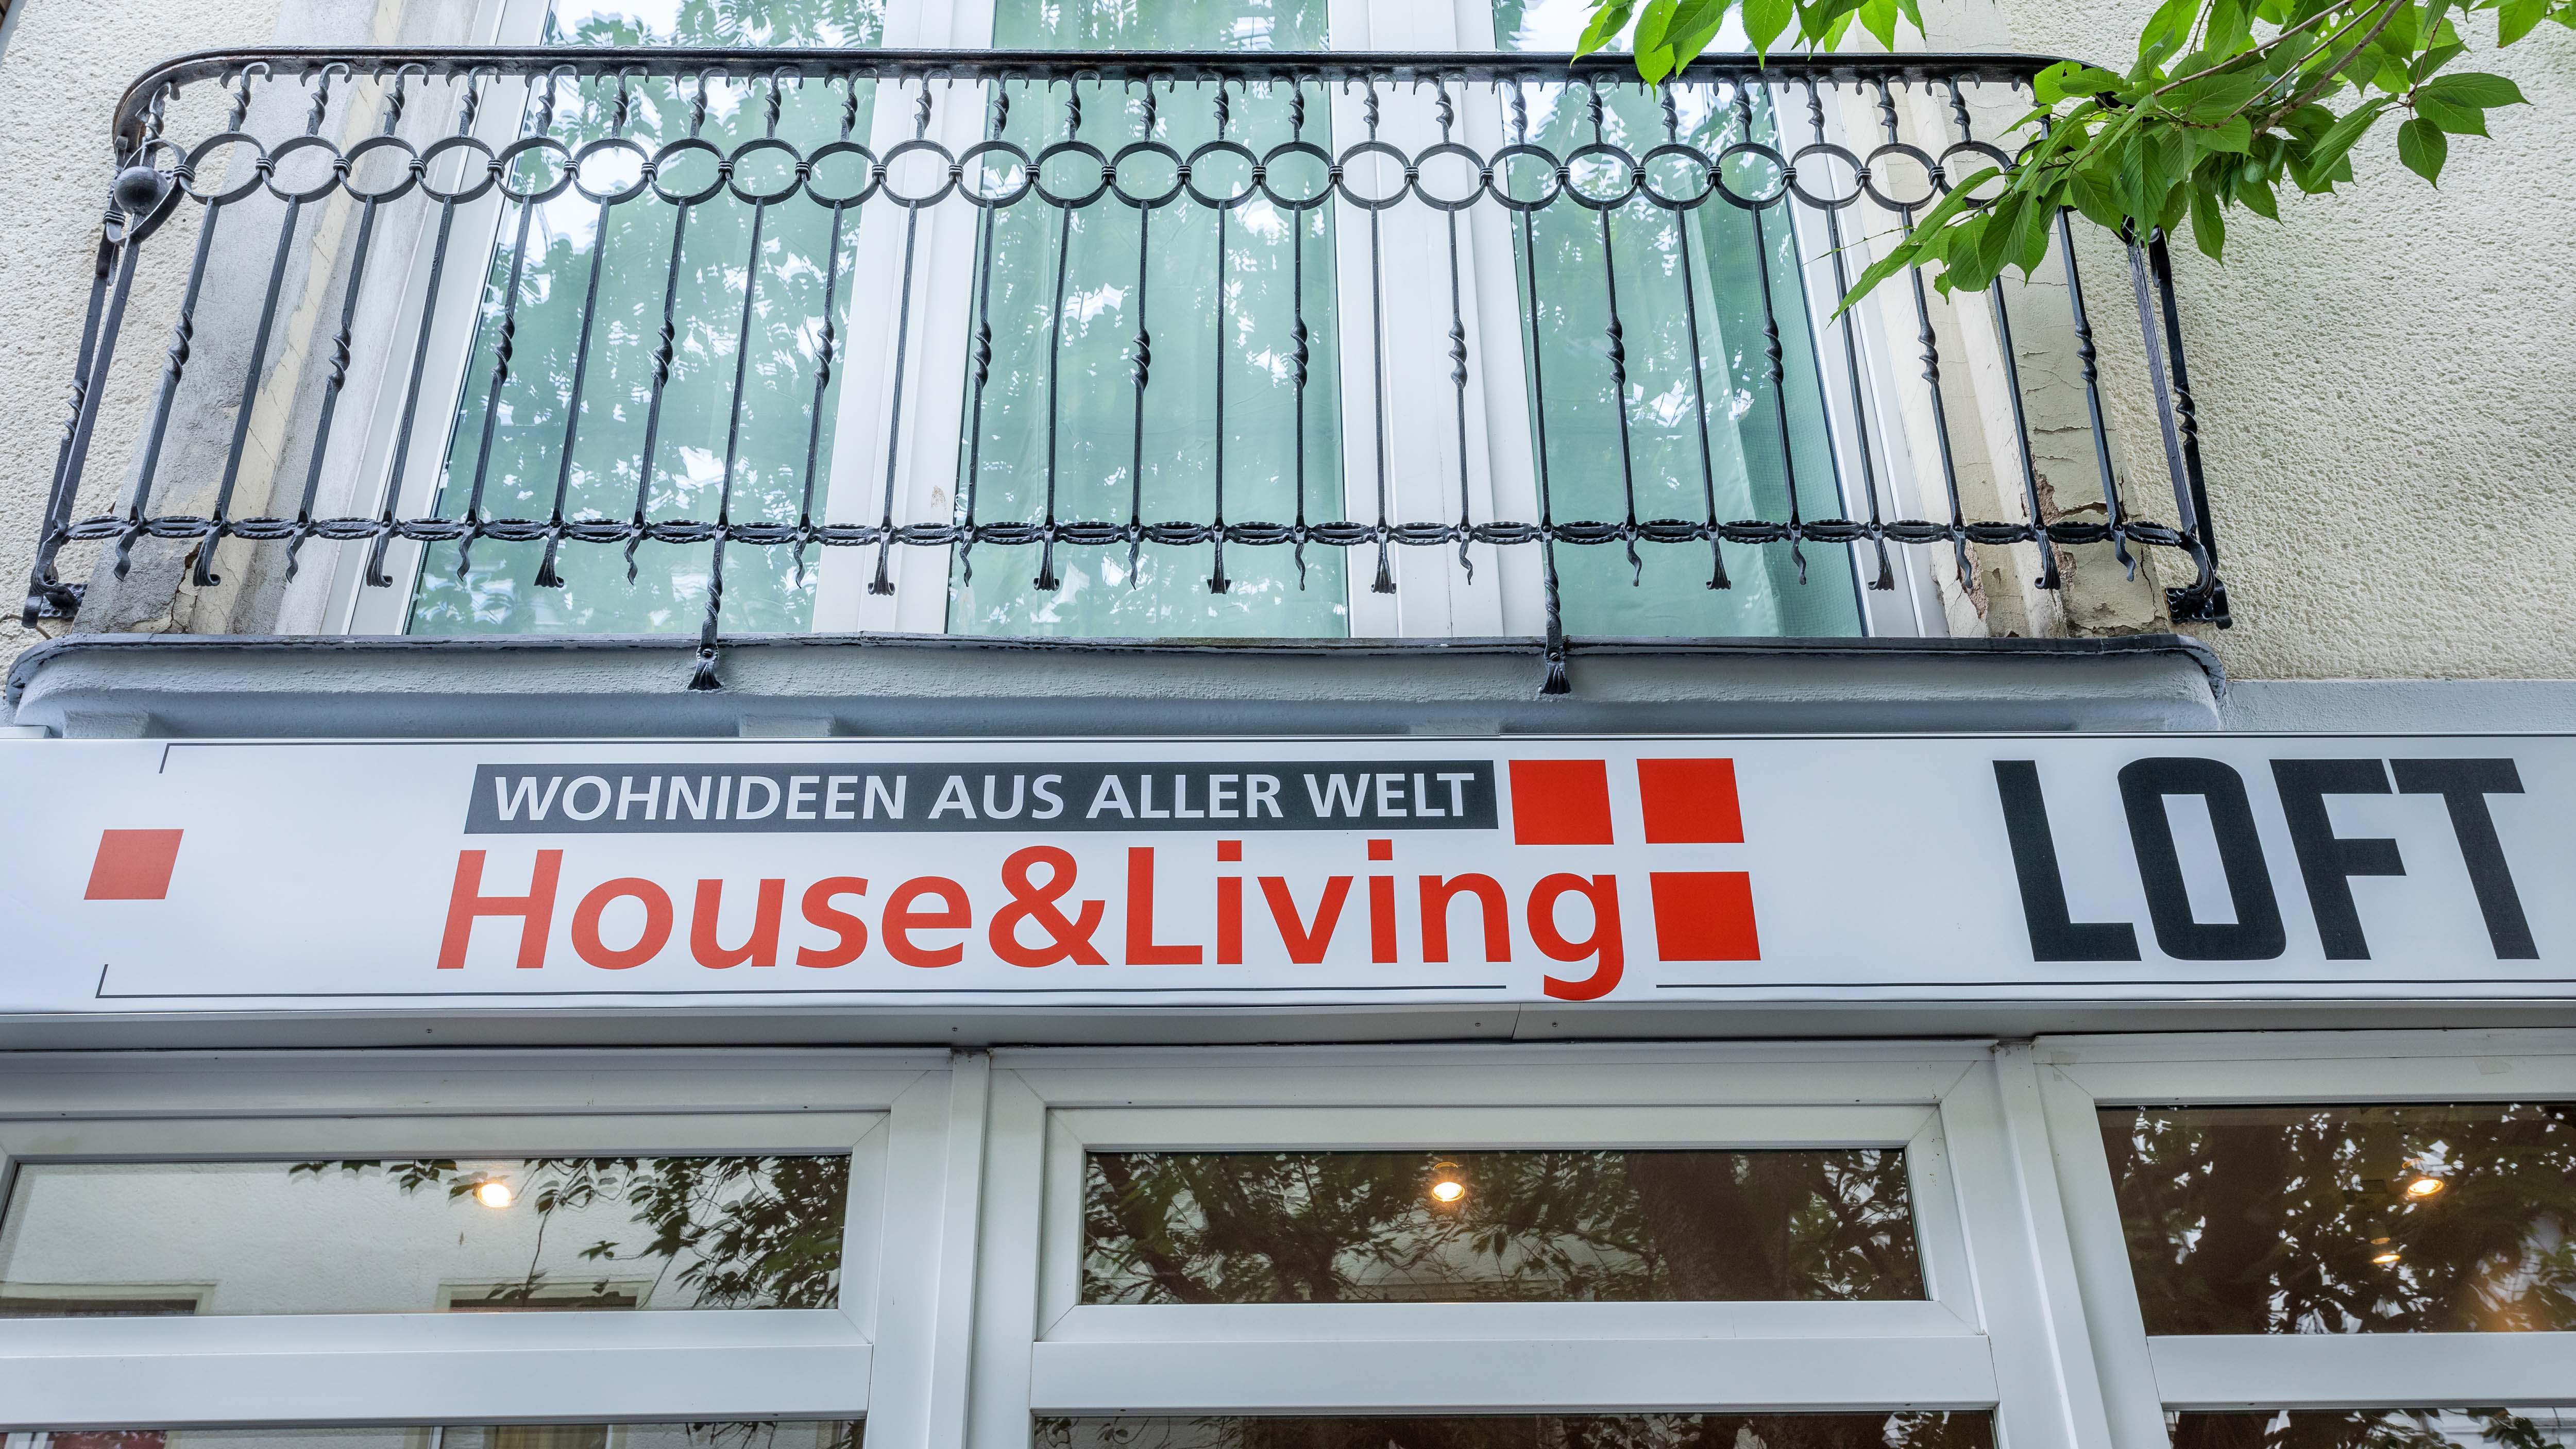 House & Living Loft | Möbel | Tische | Wohnideen aus aller Welt| Bonn, Breite Str. 70 in Bonn